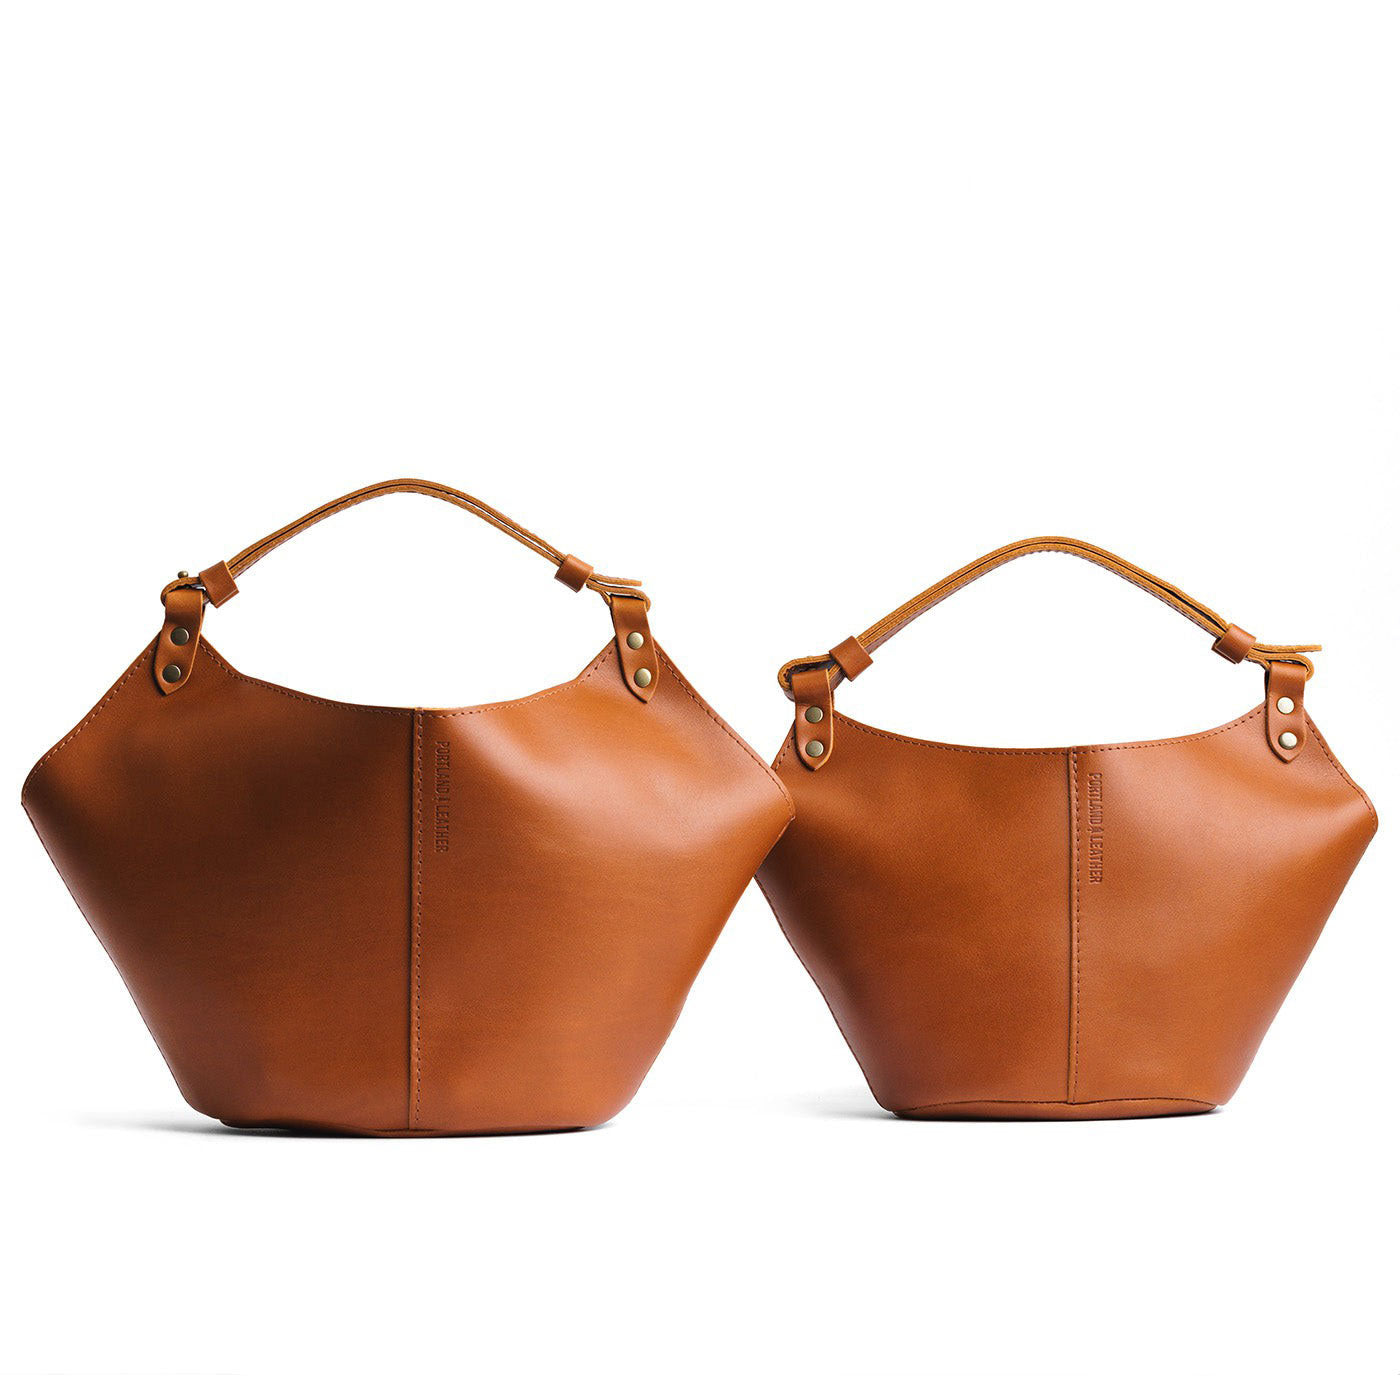 Honey | Structured bucket shaped handbag with an adjustable shoulder strap